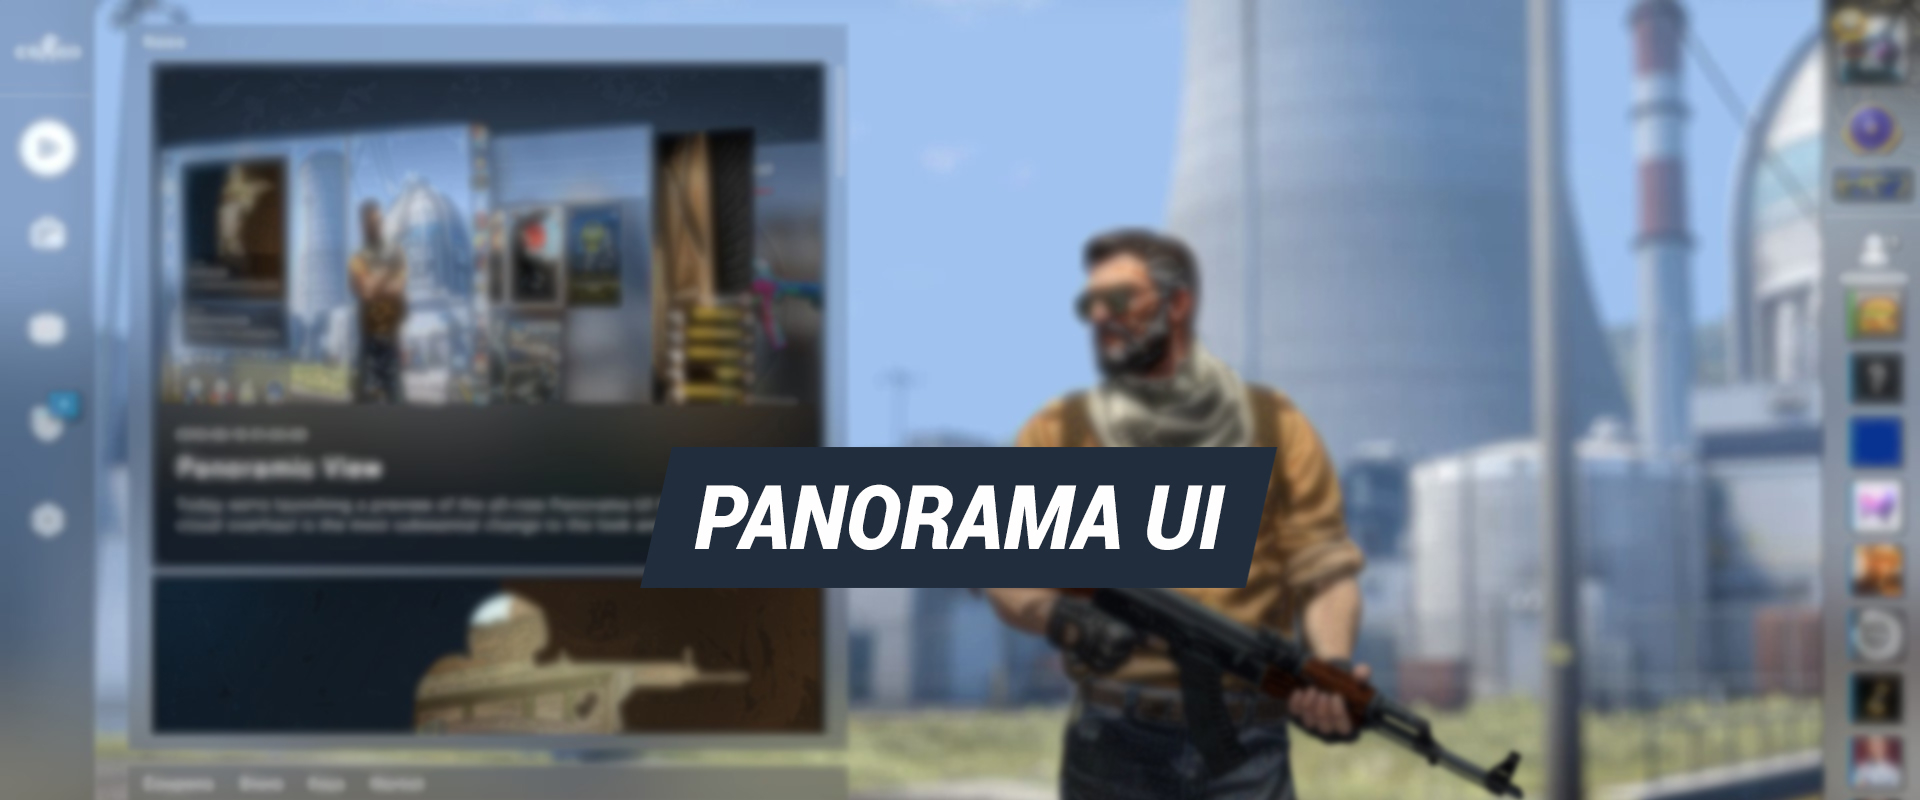 Megjelent bétában a Panorama UI - ez minden amit vártunk és sokkal több